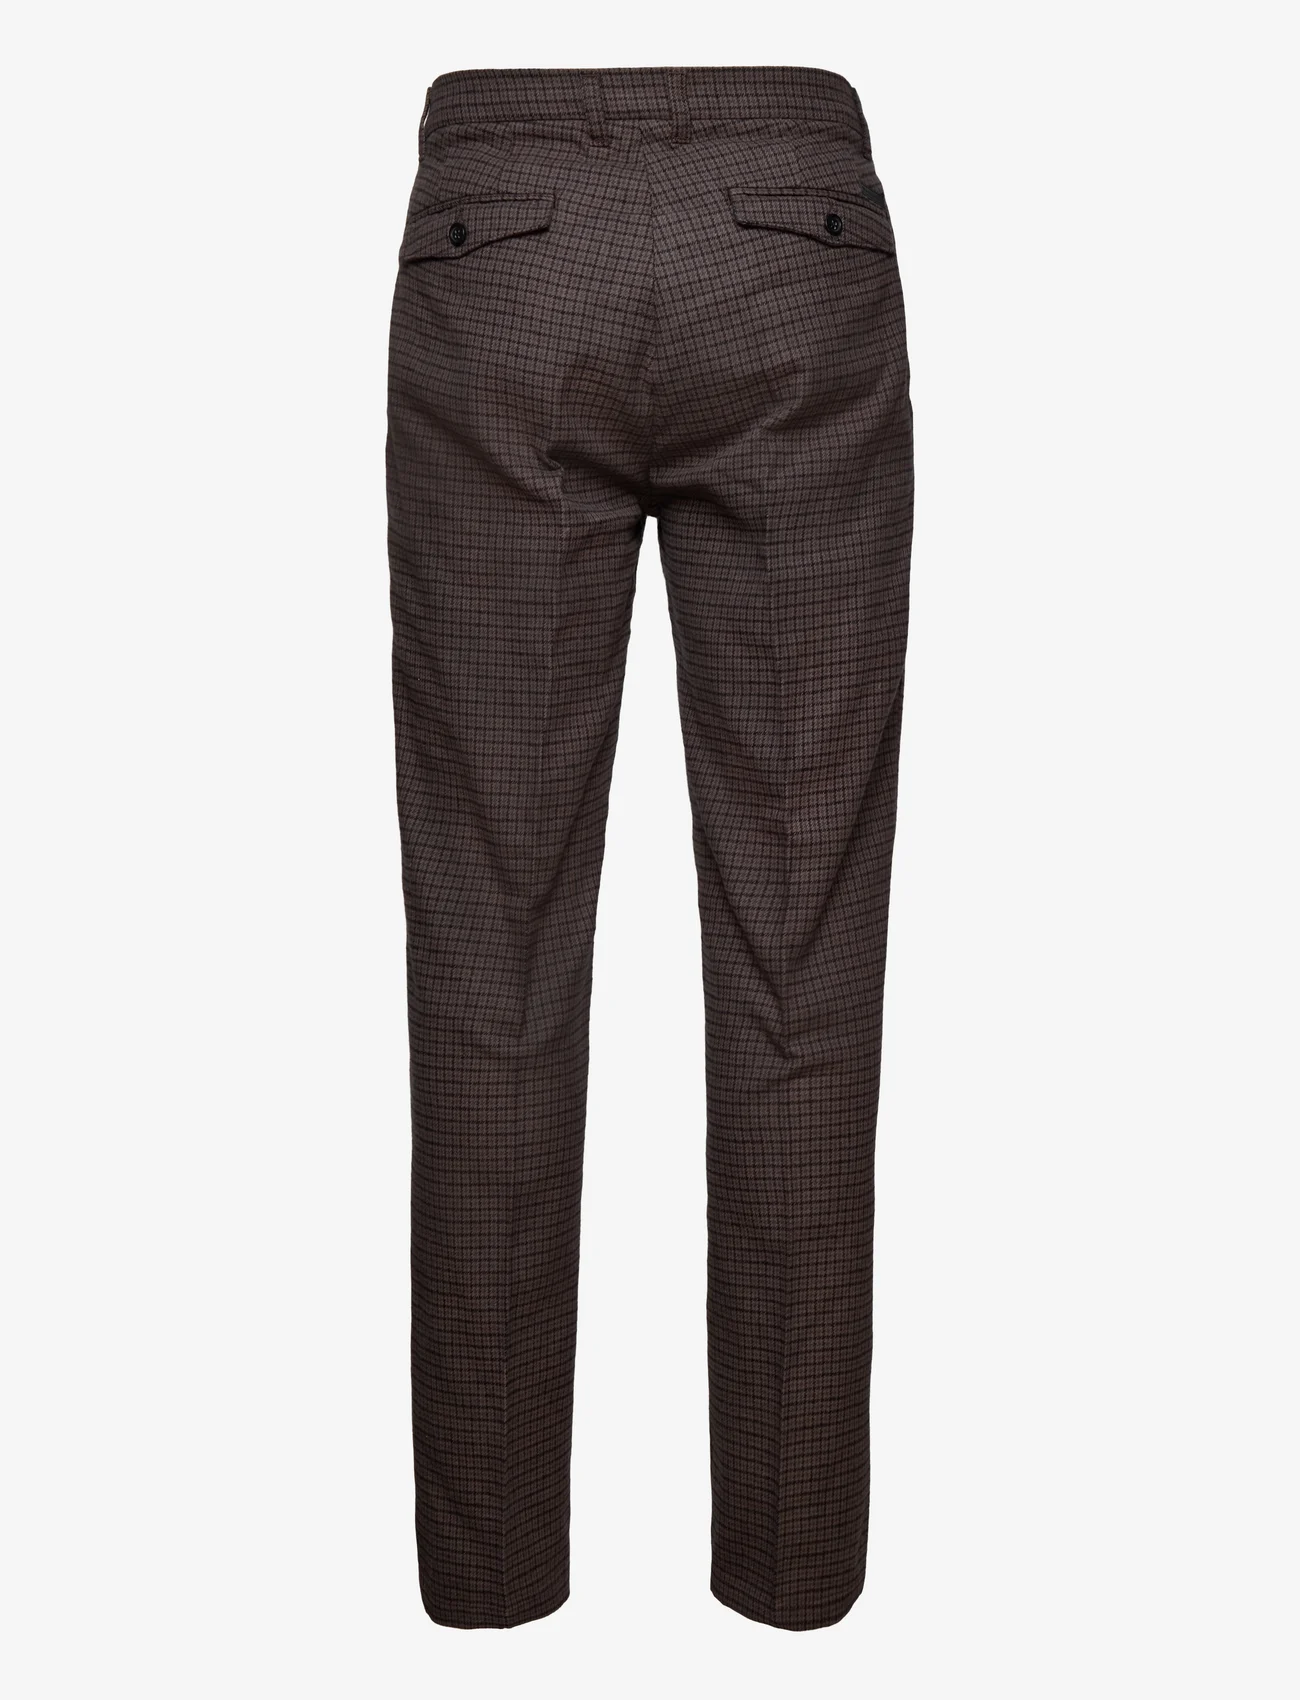 Woodbird - Eik Breek Pants - suit trousers - brown check - 1